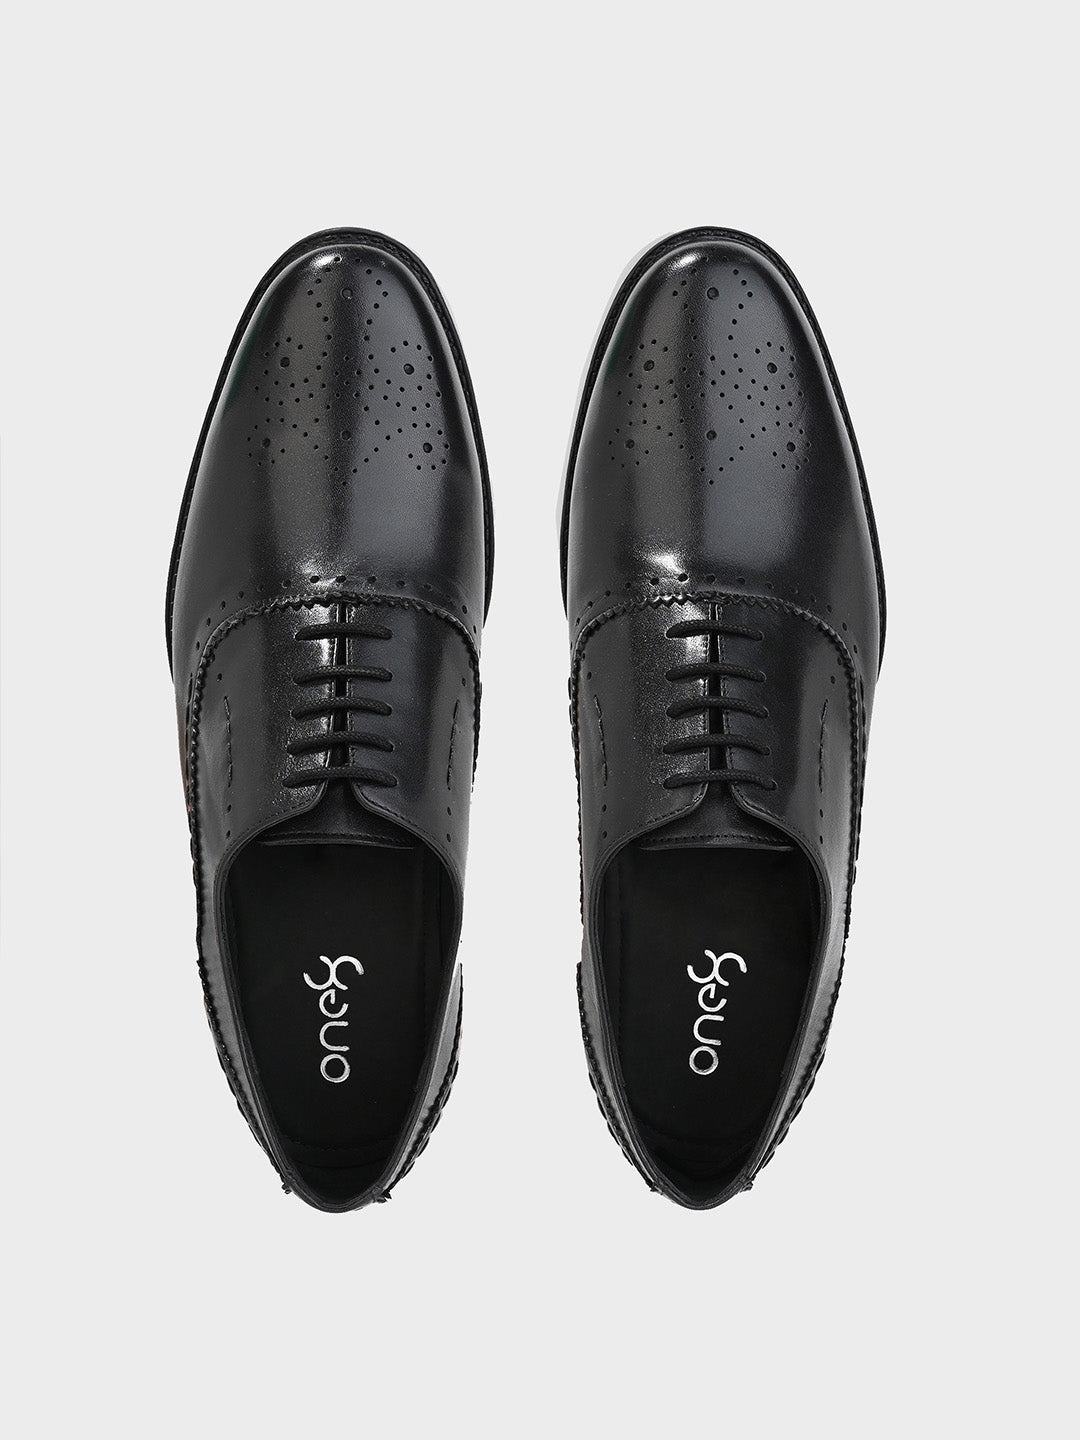 Men's Black Leather Brogue Lace-Up Shoes